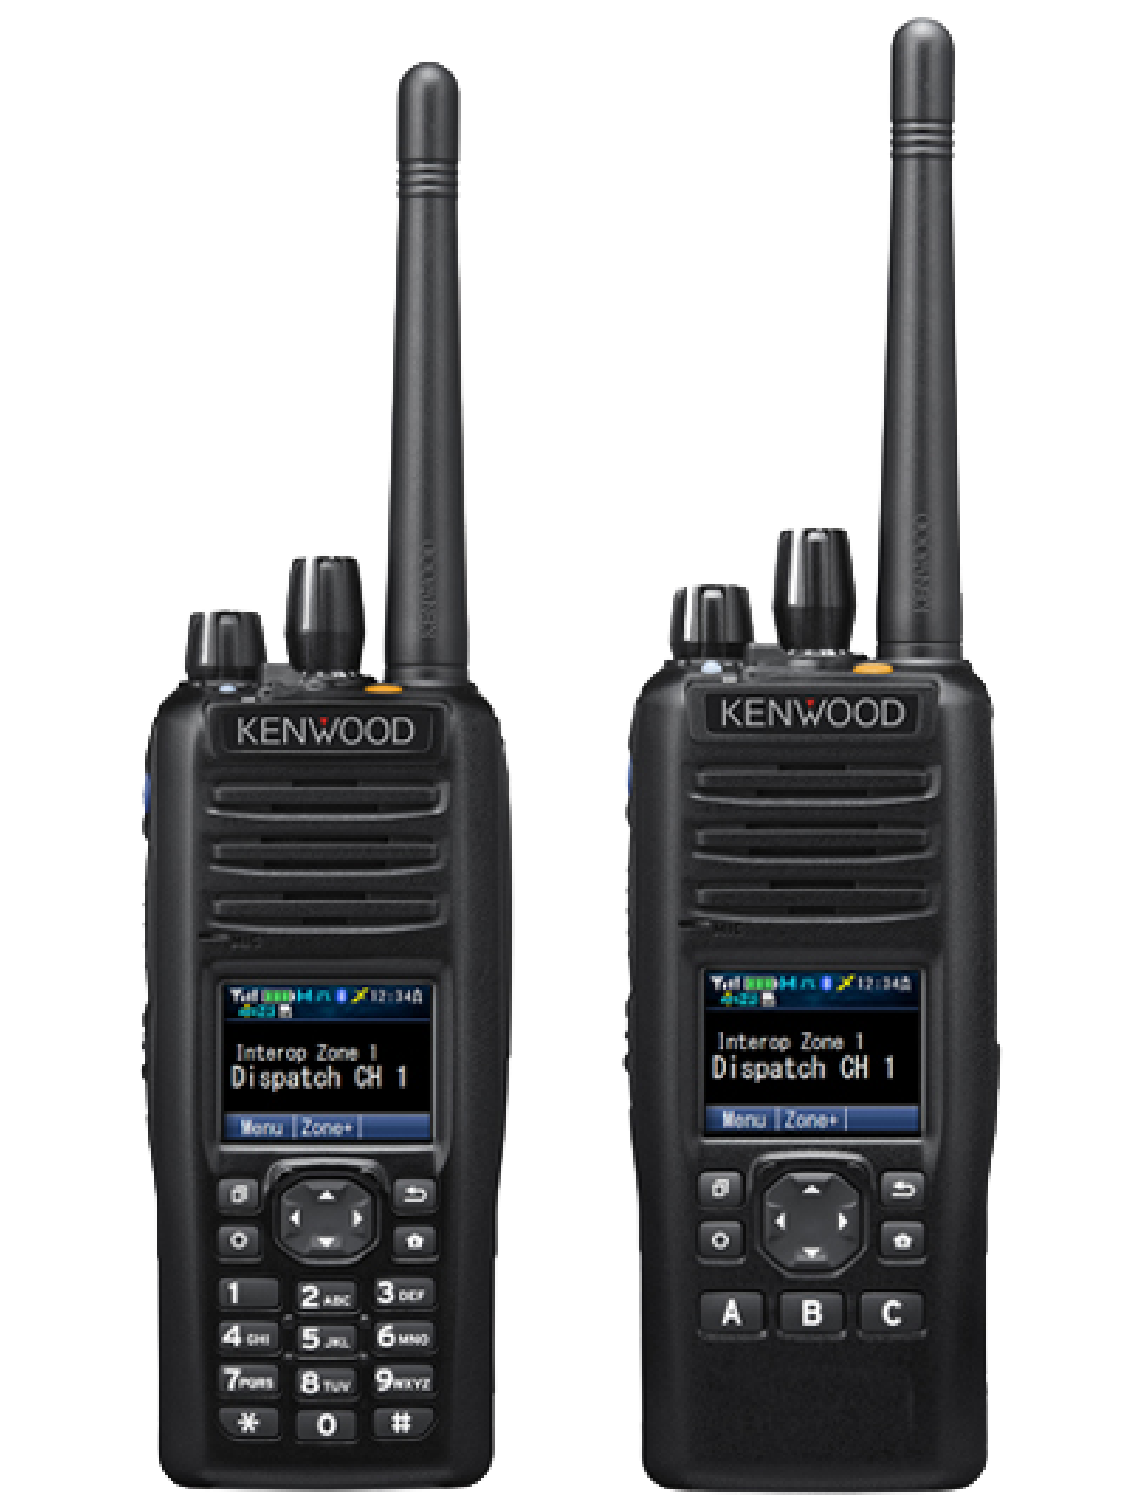 Kenwood NX-5300